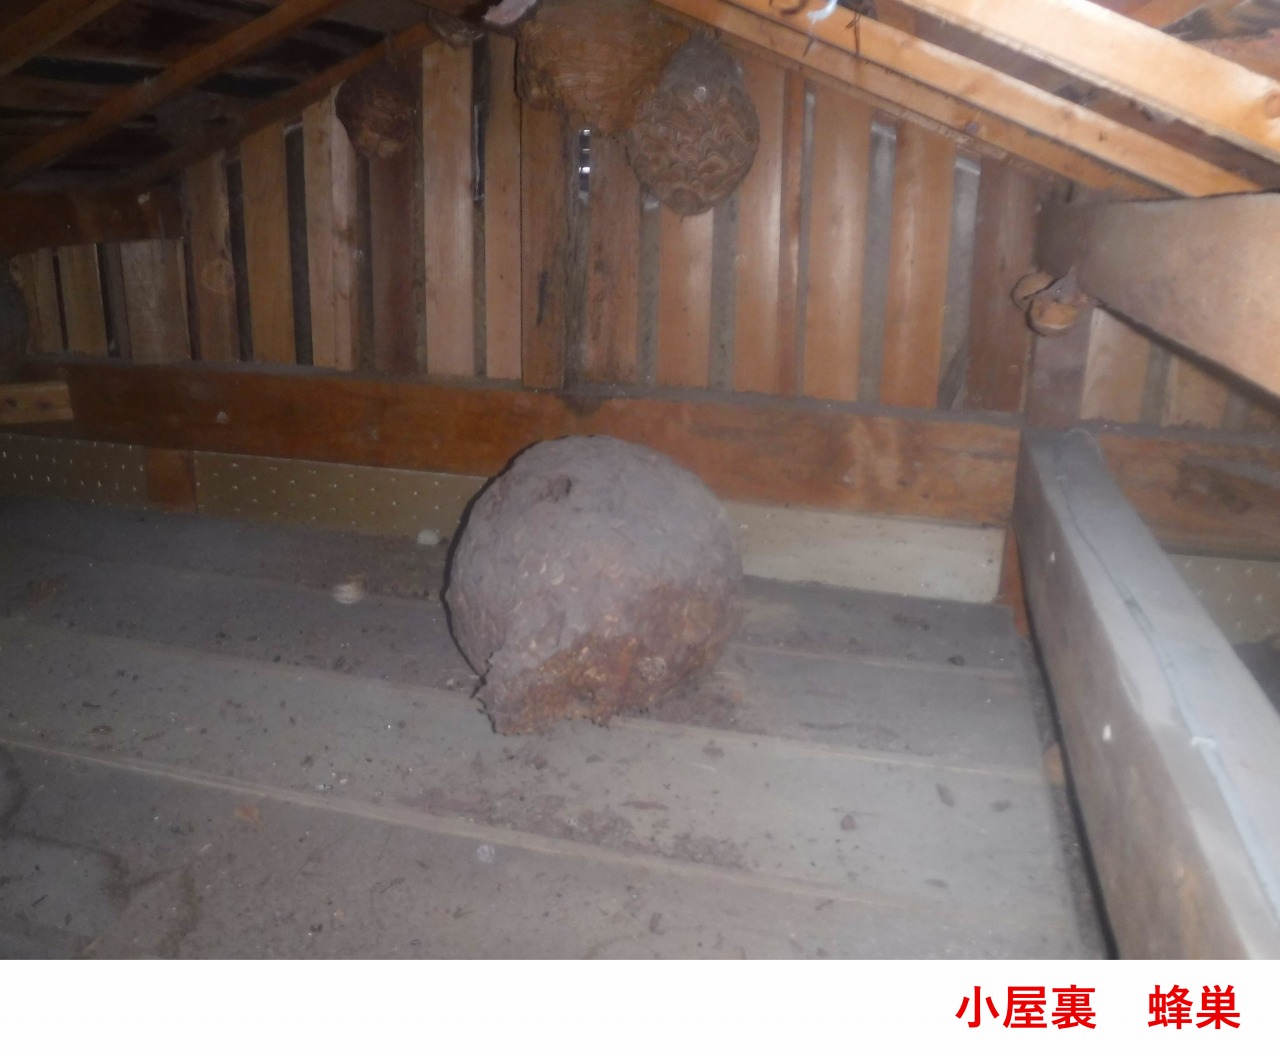 滋賀県大津市国分で屋根工事中に小屋裏清掃ハチの巣撤去を実施致しました